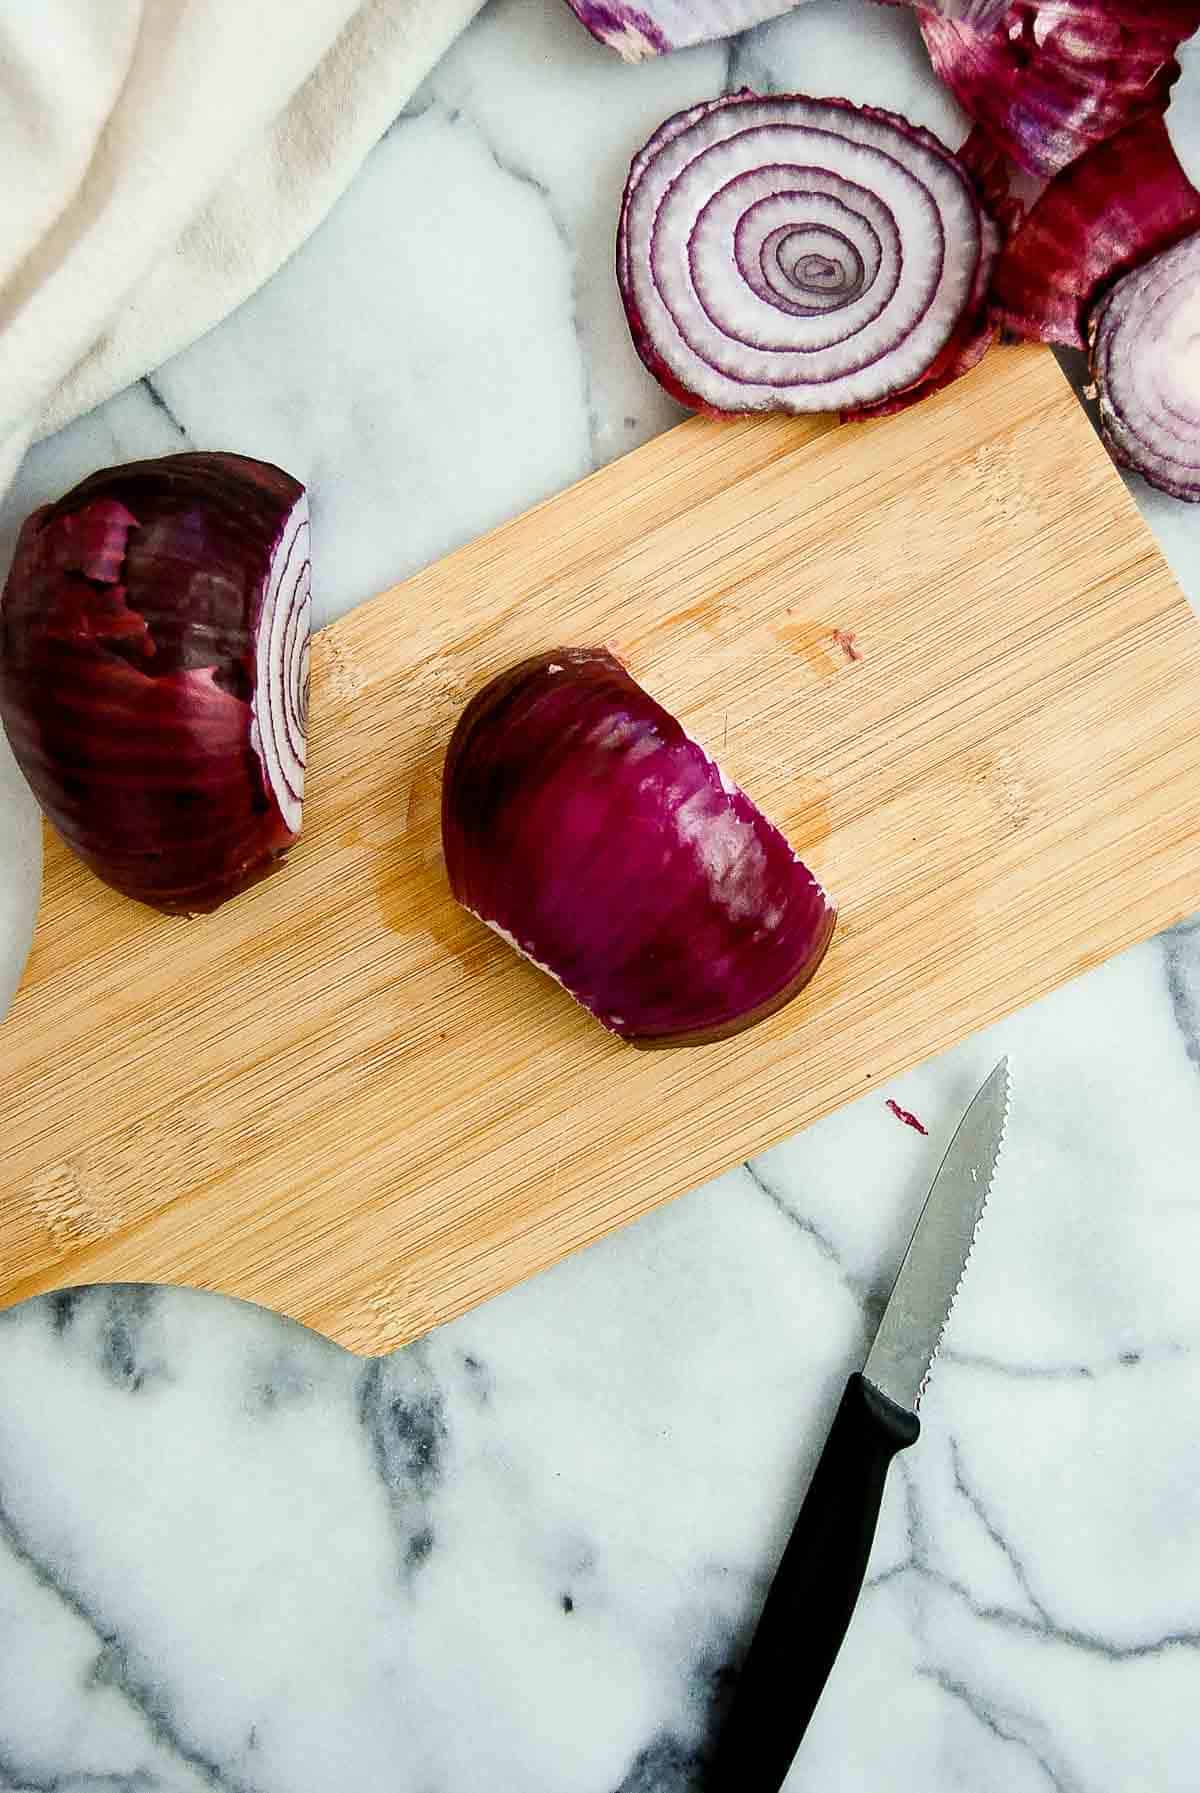 onion, cut in half on cutting board.